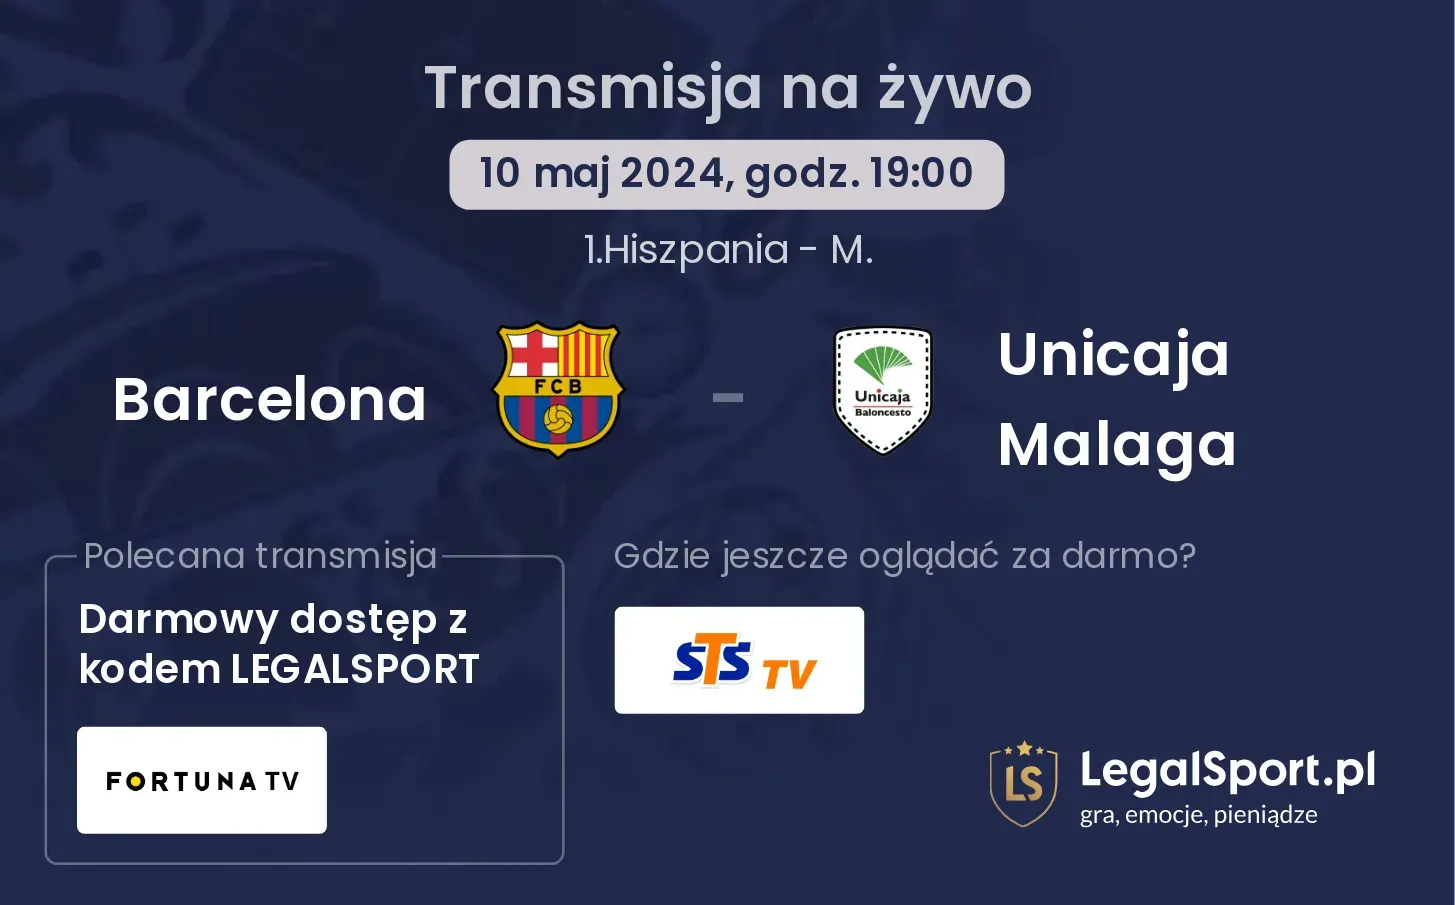 Barcelona - Unicaja Malaga transmisja na żywo